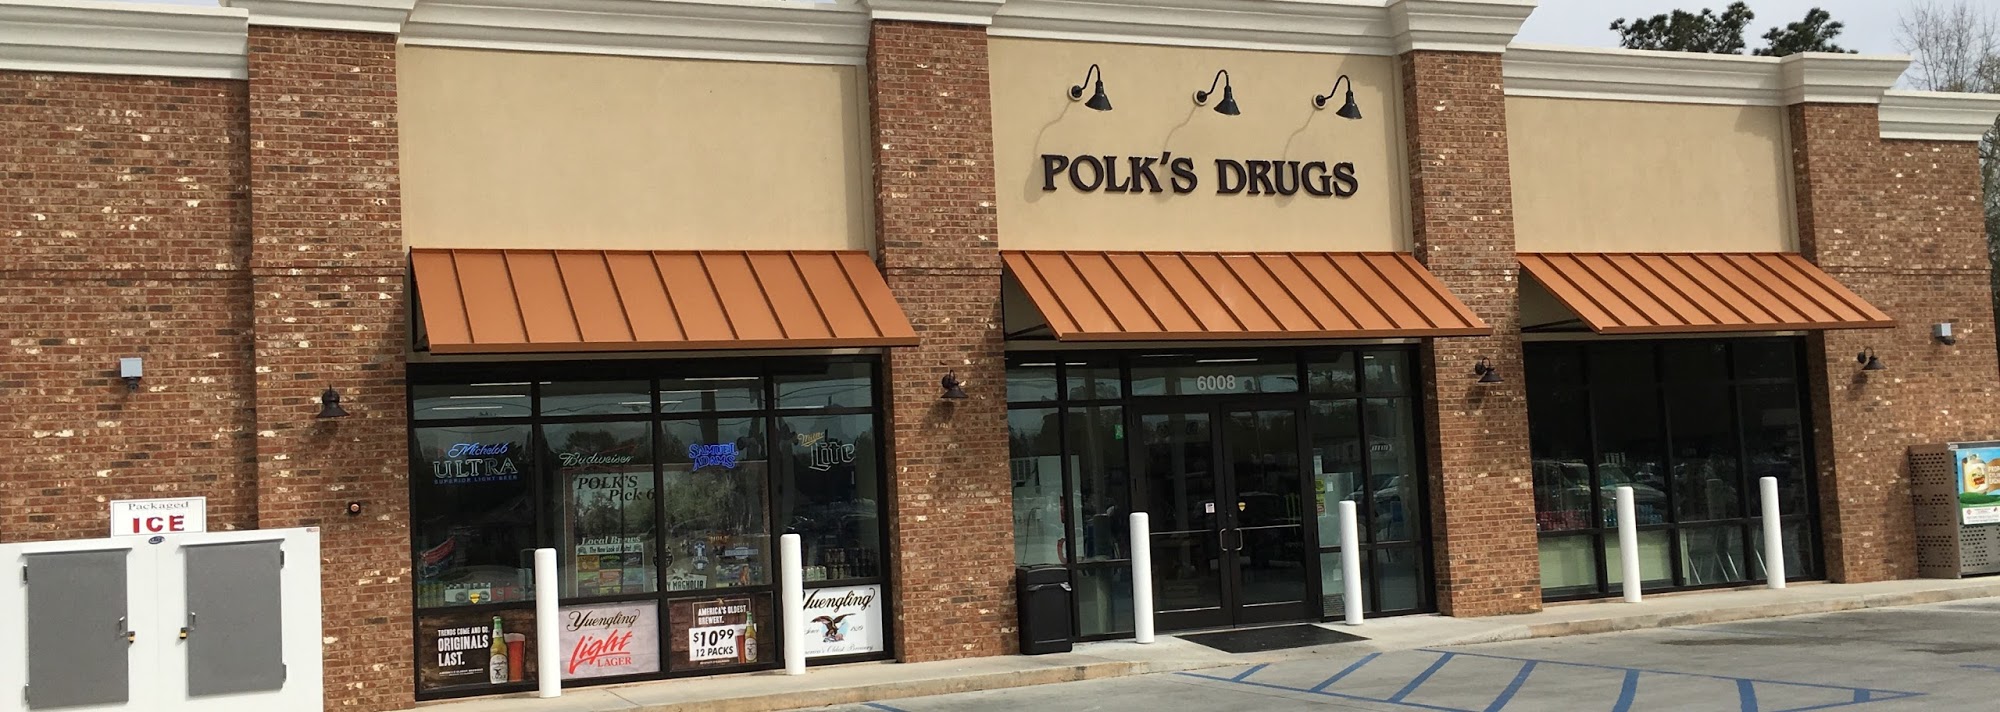 Polk's Drugs #9